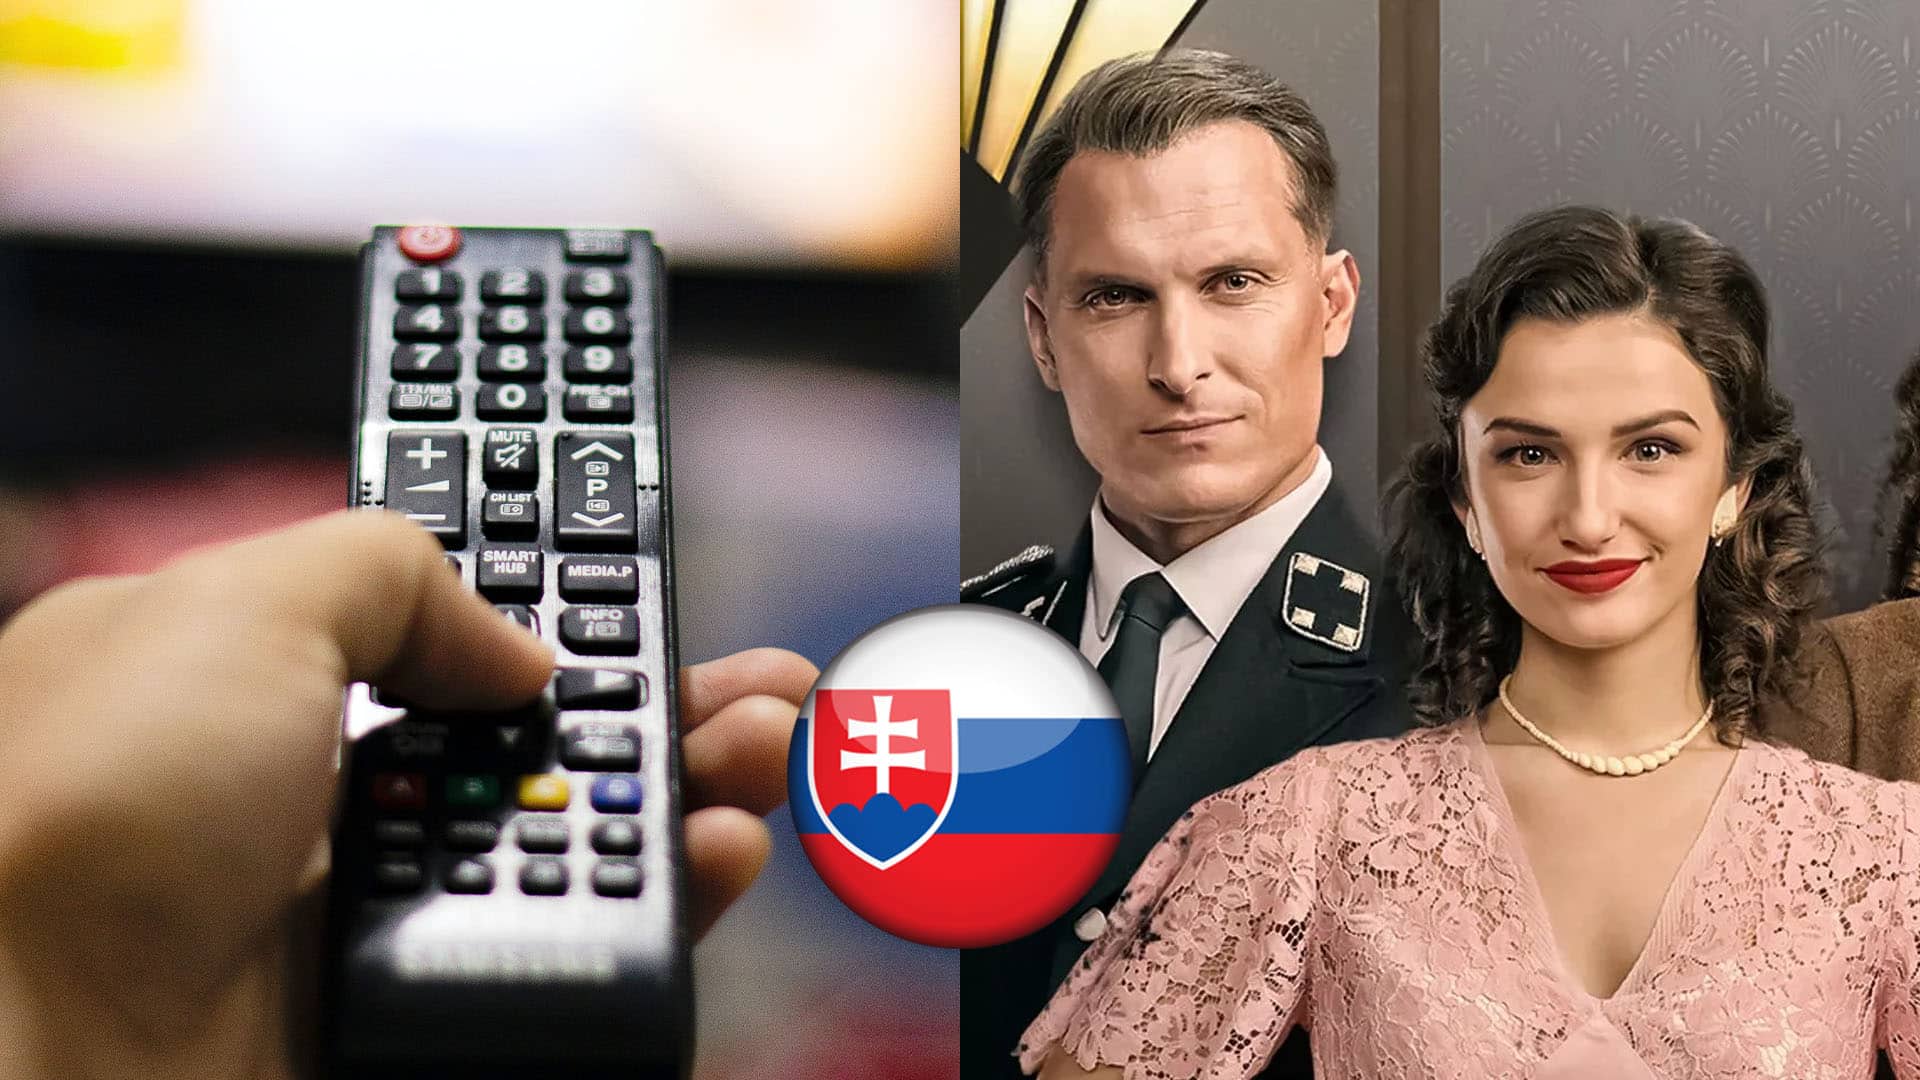 slovenska televizia sledovanost